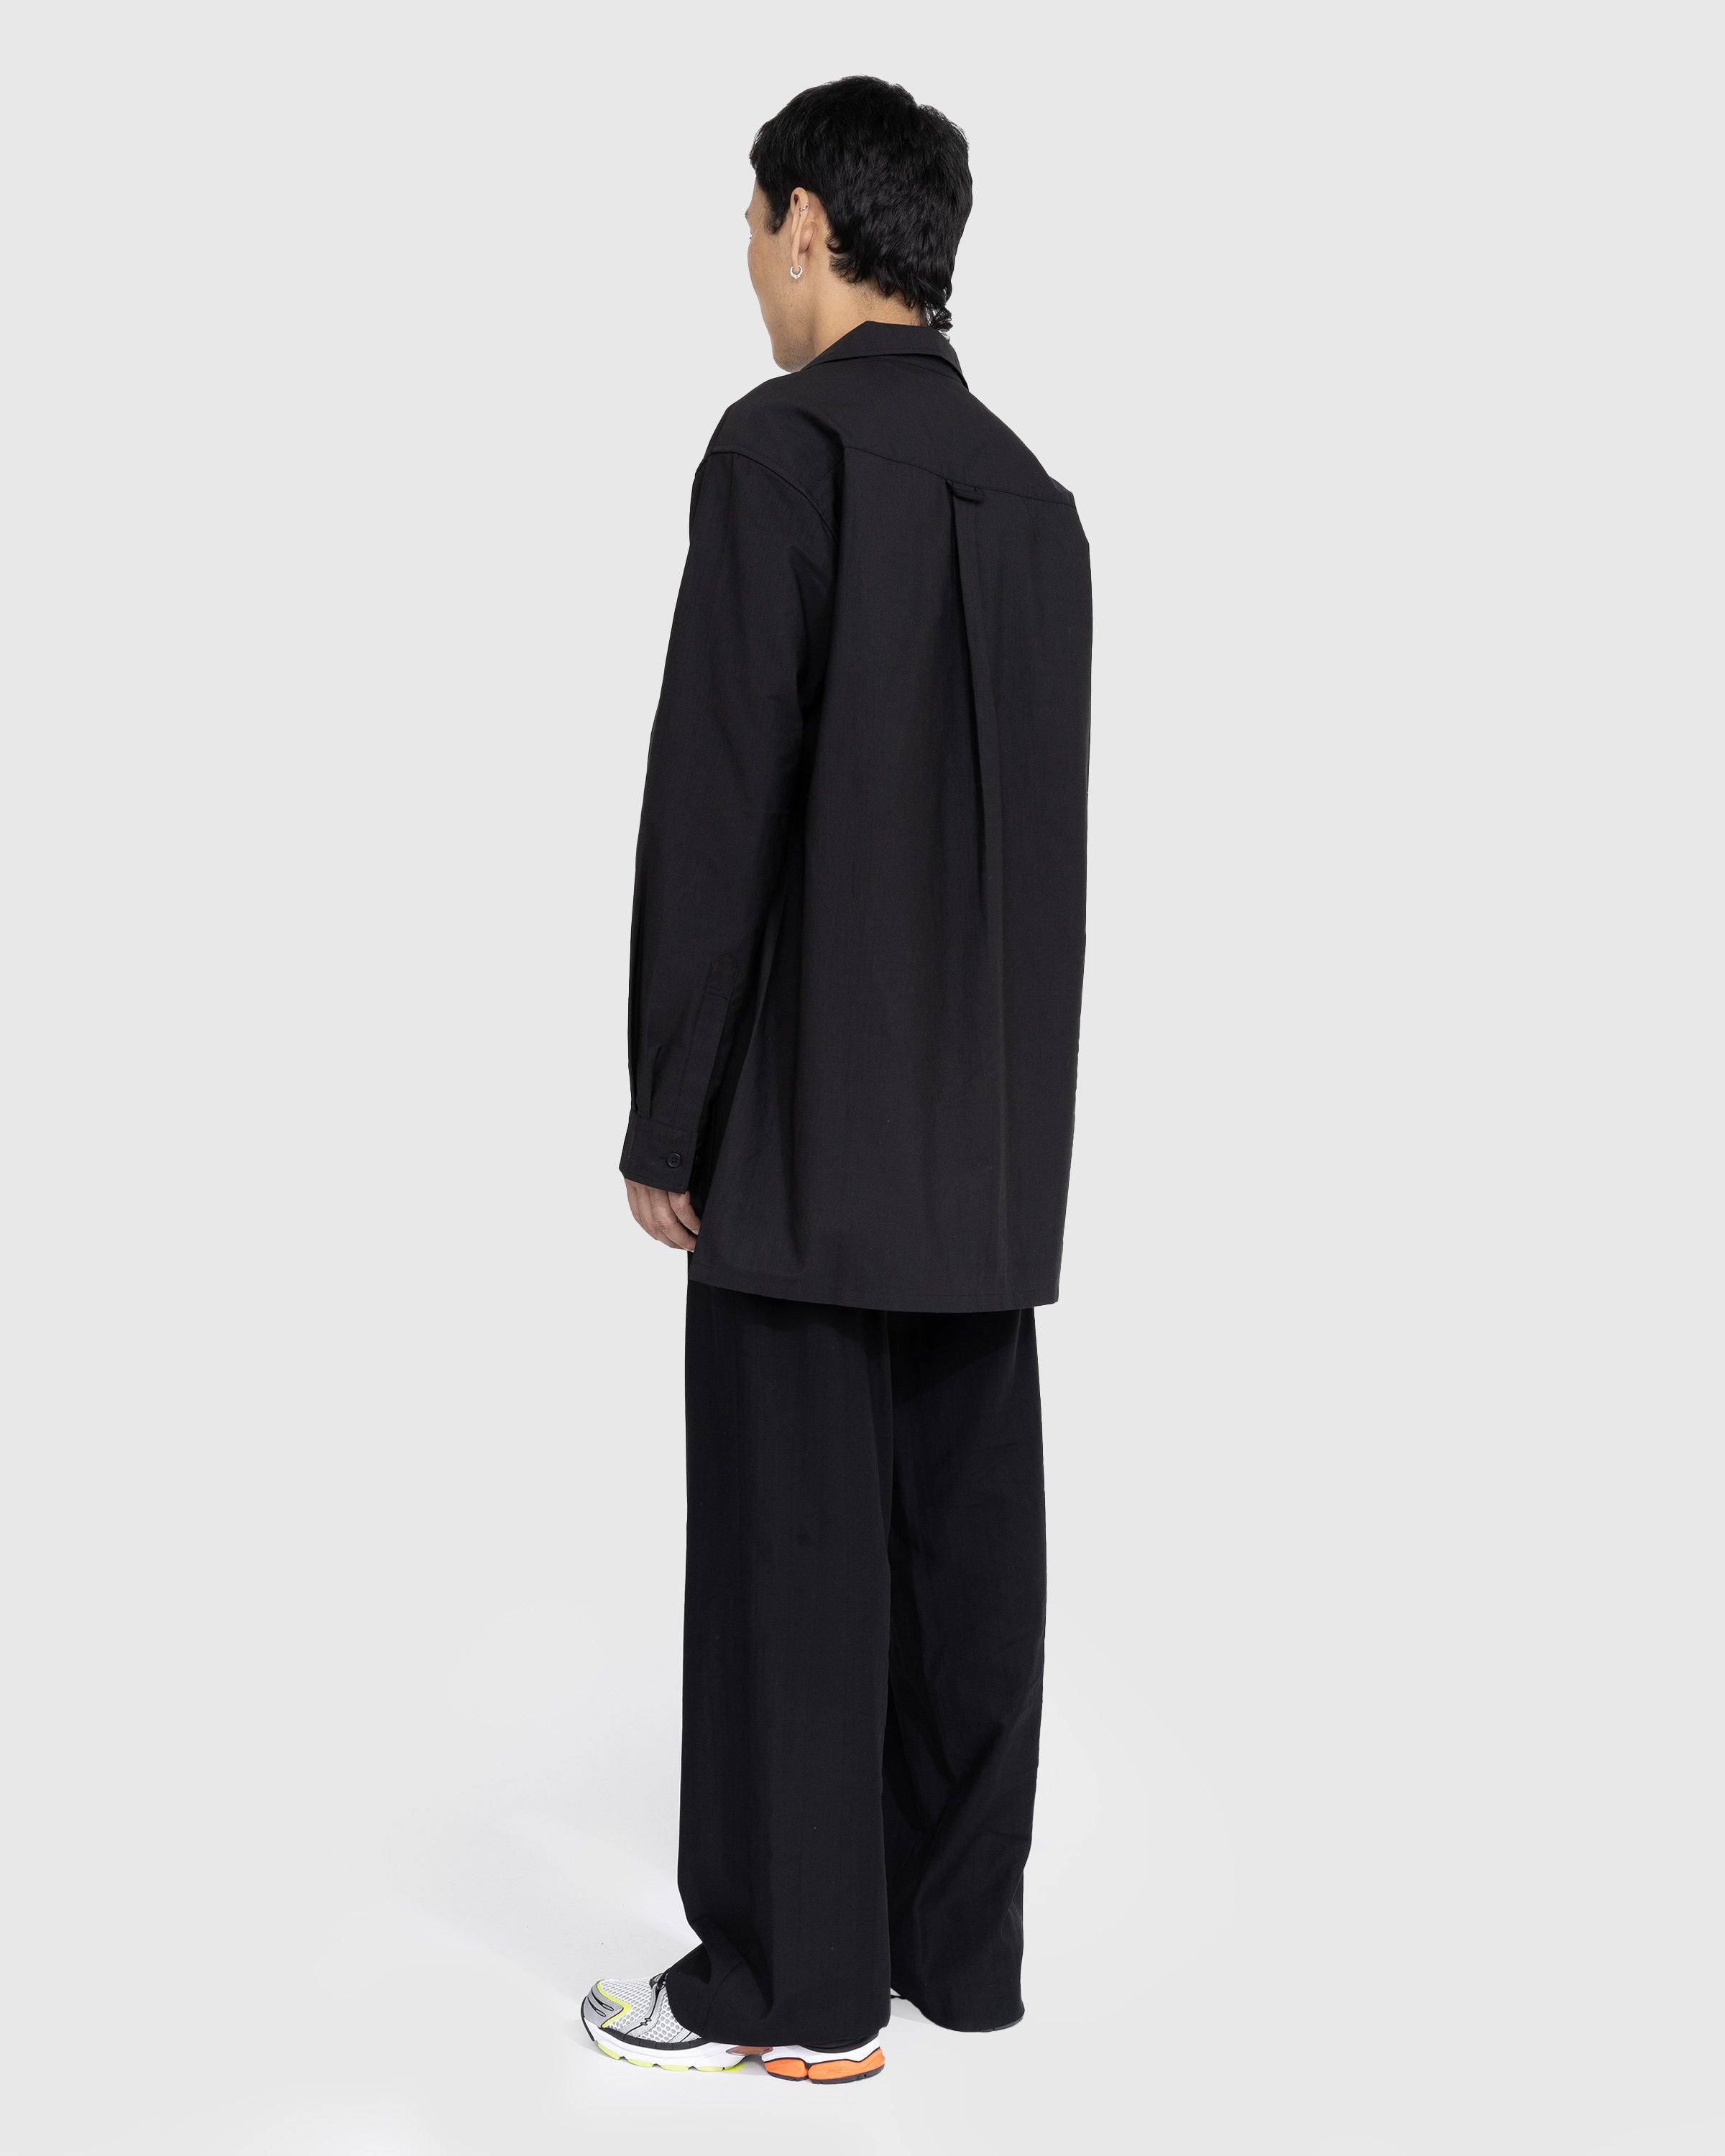 Y-3 - Longsleeve Workwear Shirt Black - Clothing - Black - Image 3